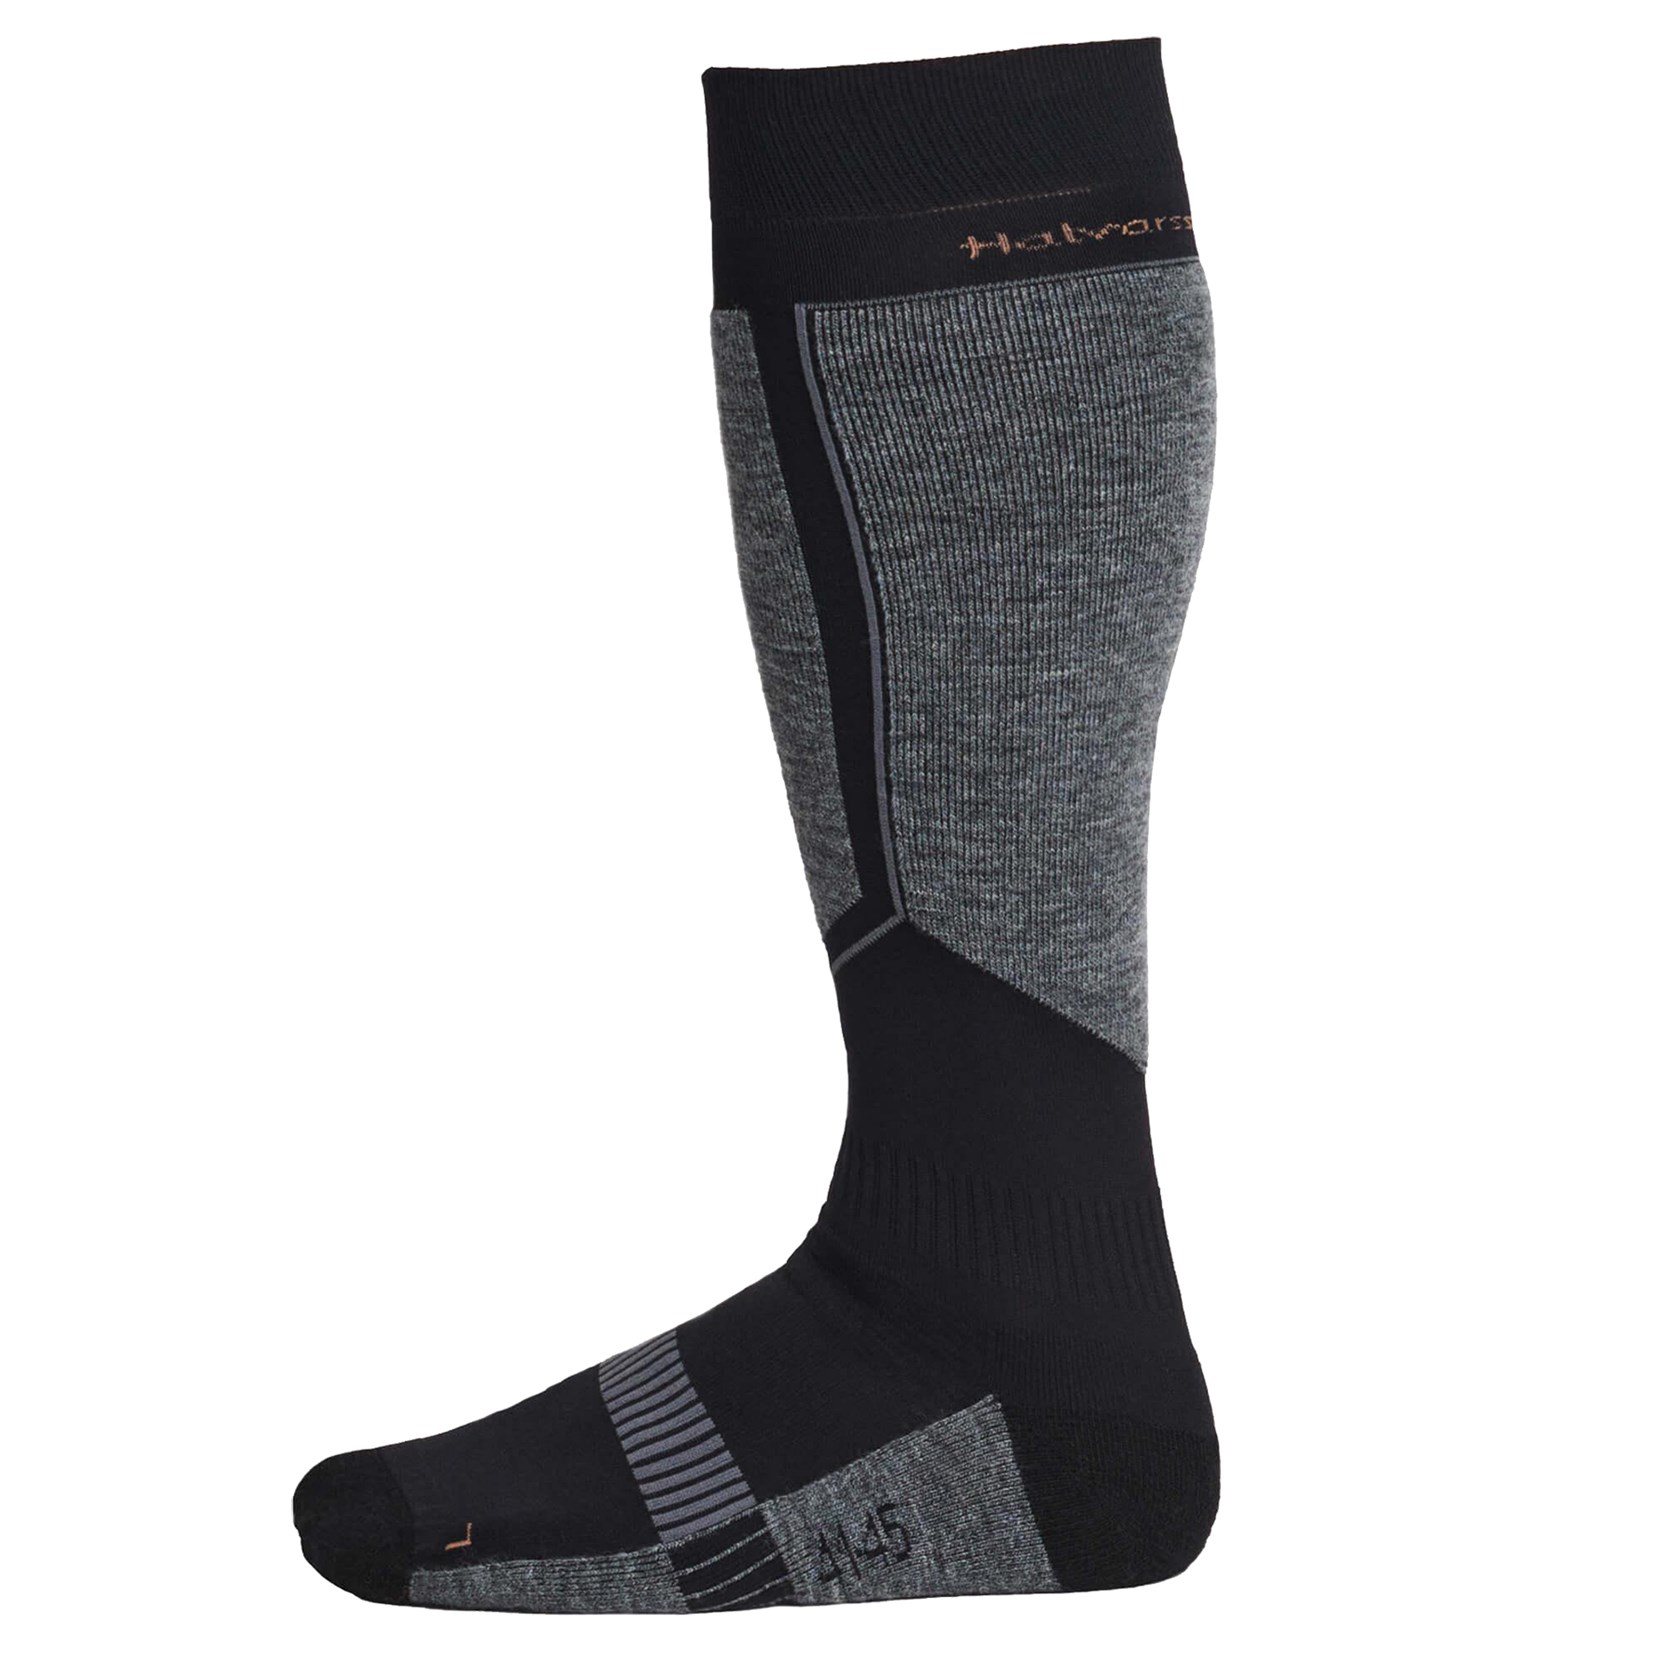 Cool socks / Halvarssons brown black in